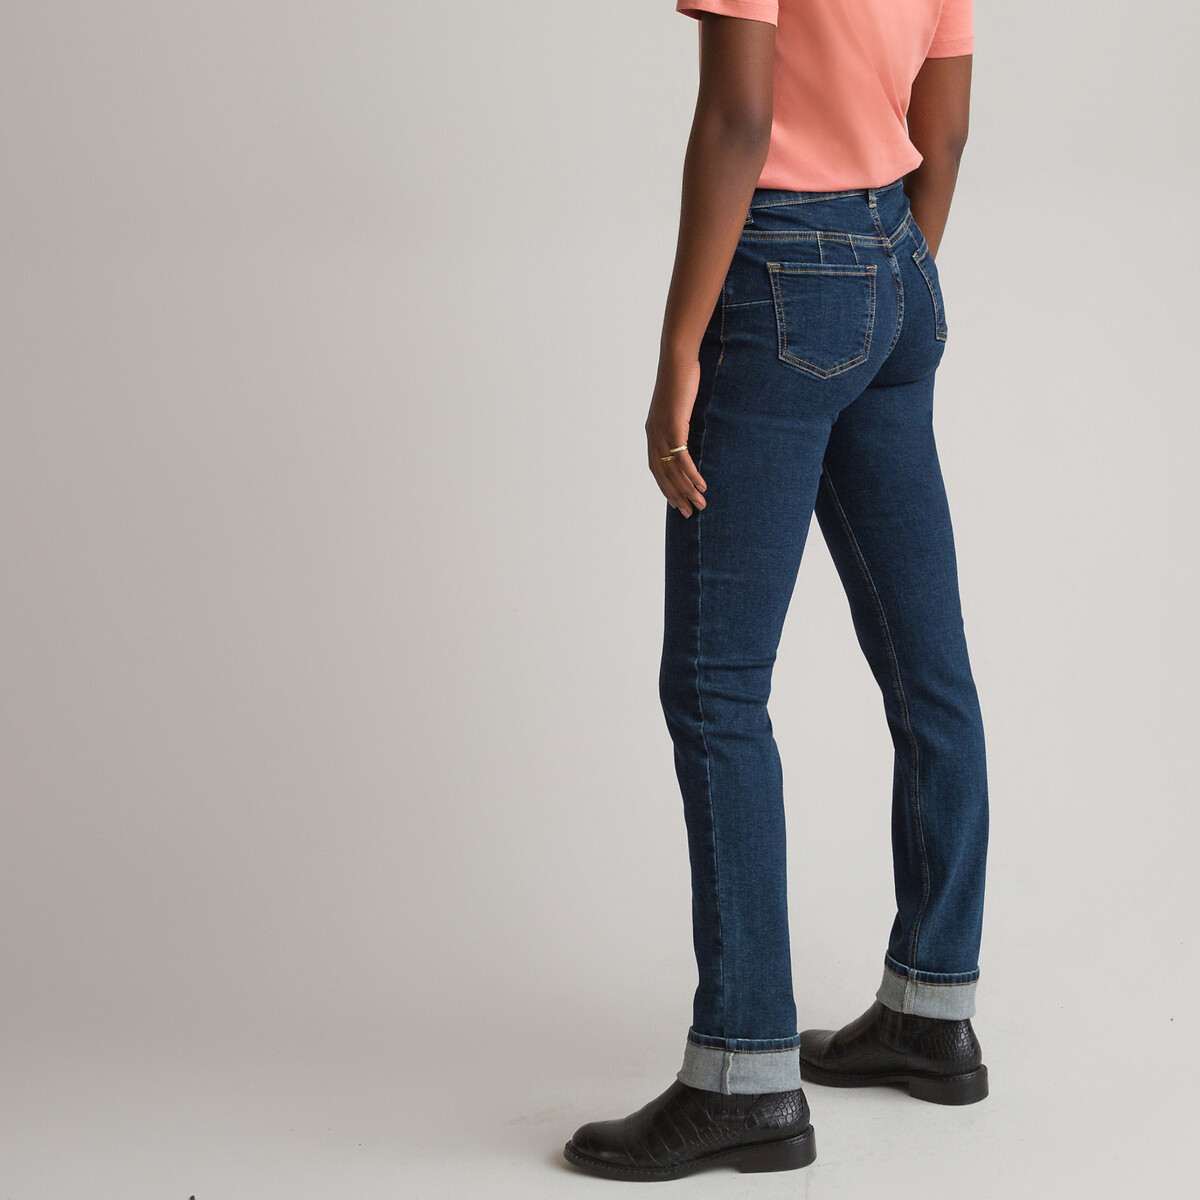 Jean slim-fit La Redoute Vêtements Pantalons & Jeans Jeans Slim 